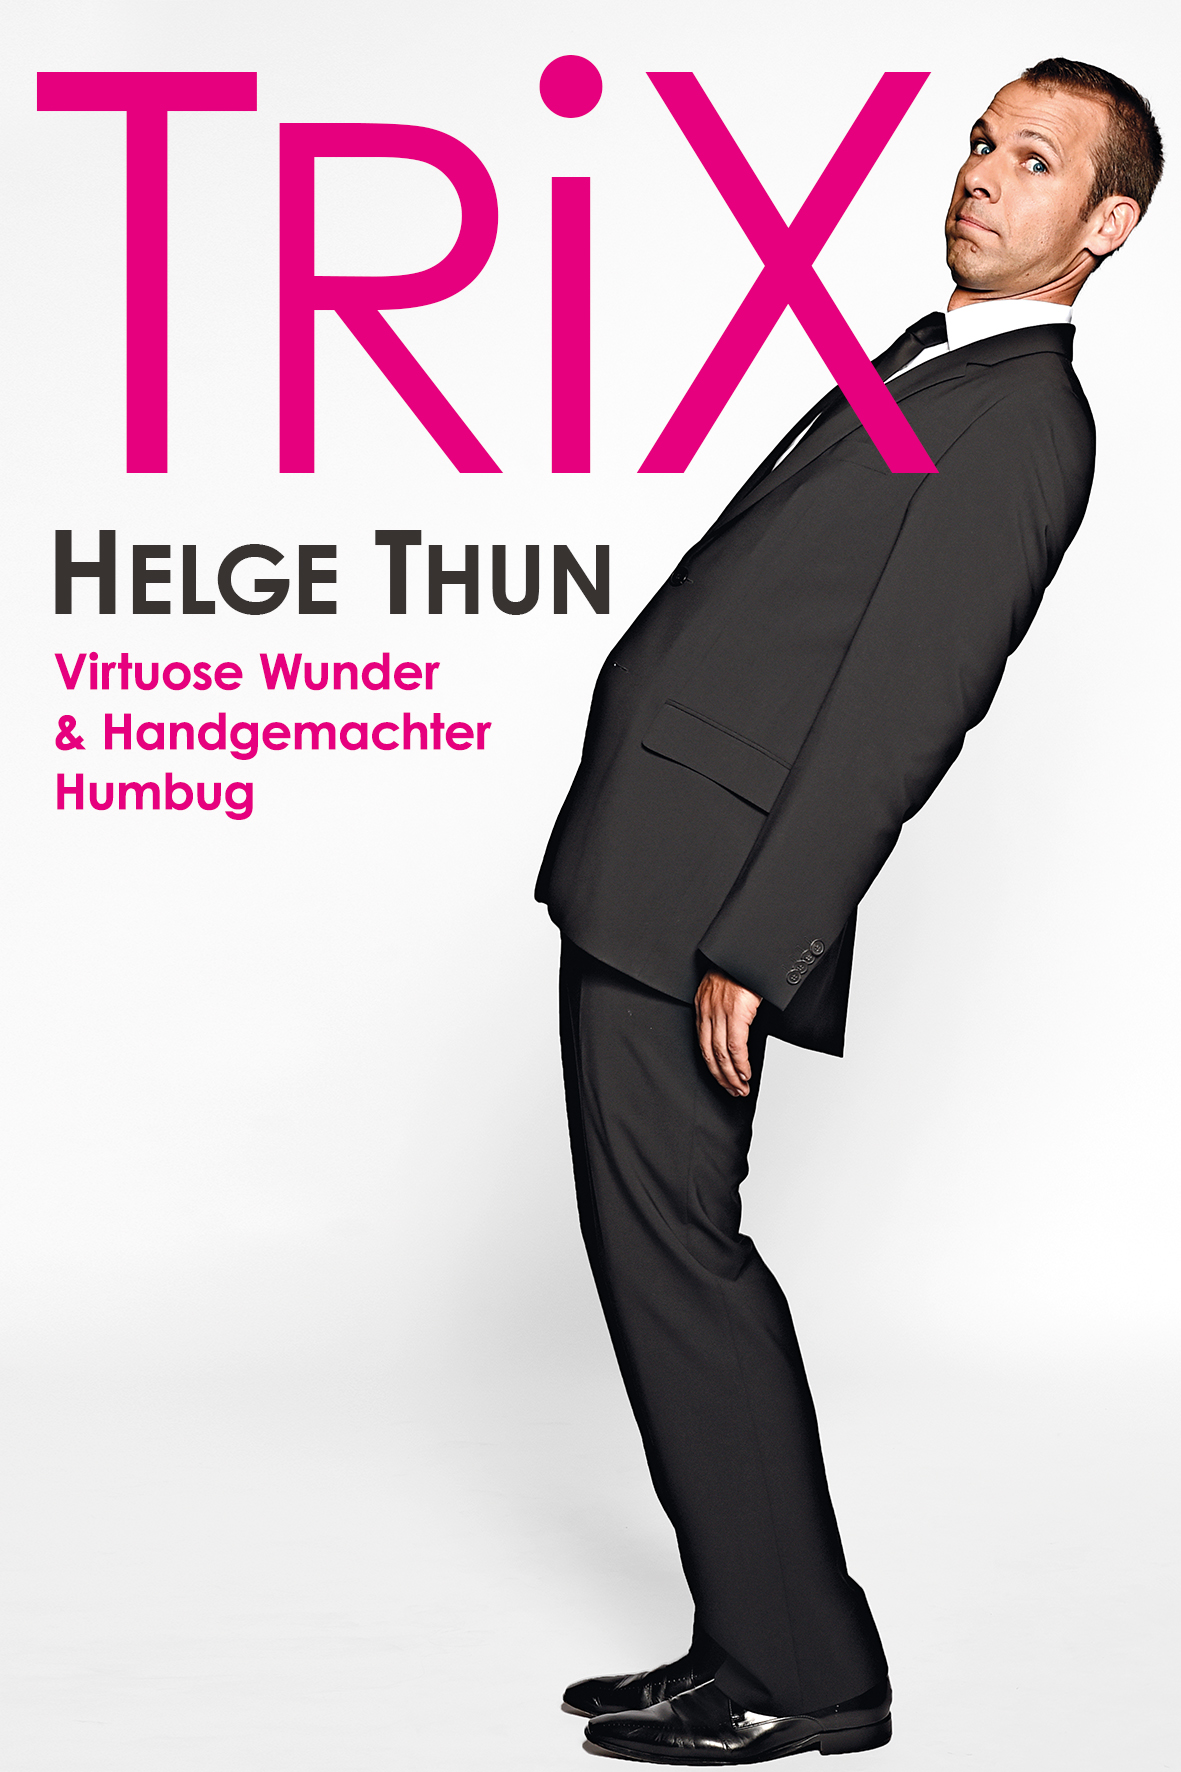 TRiX - cover